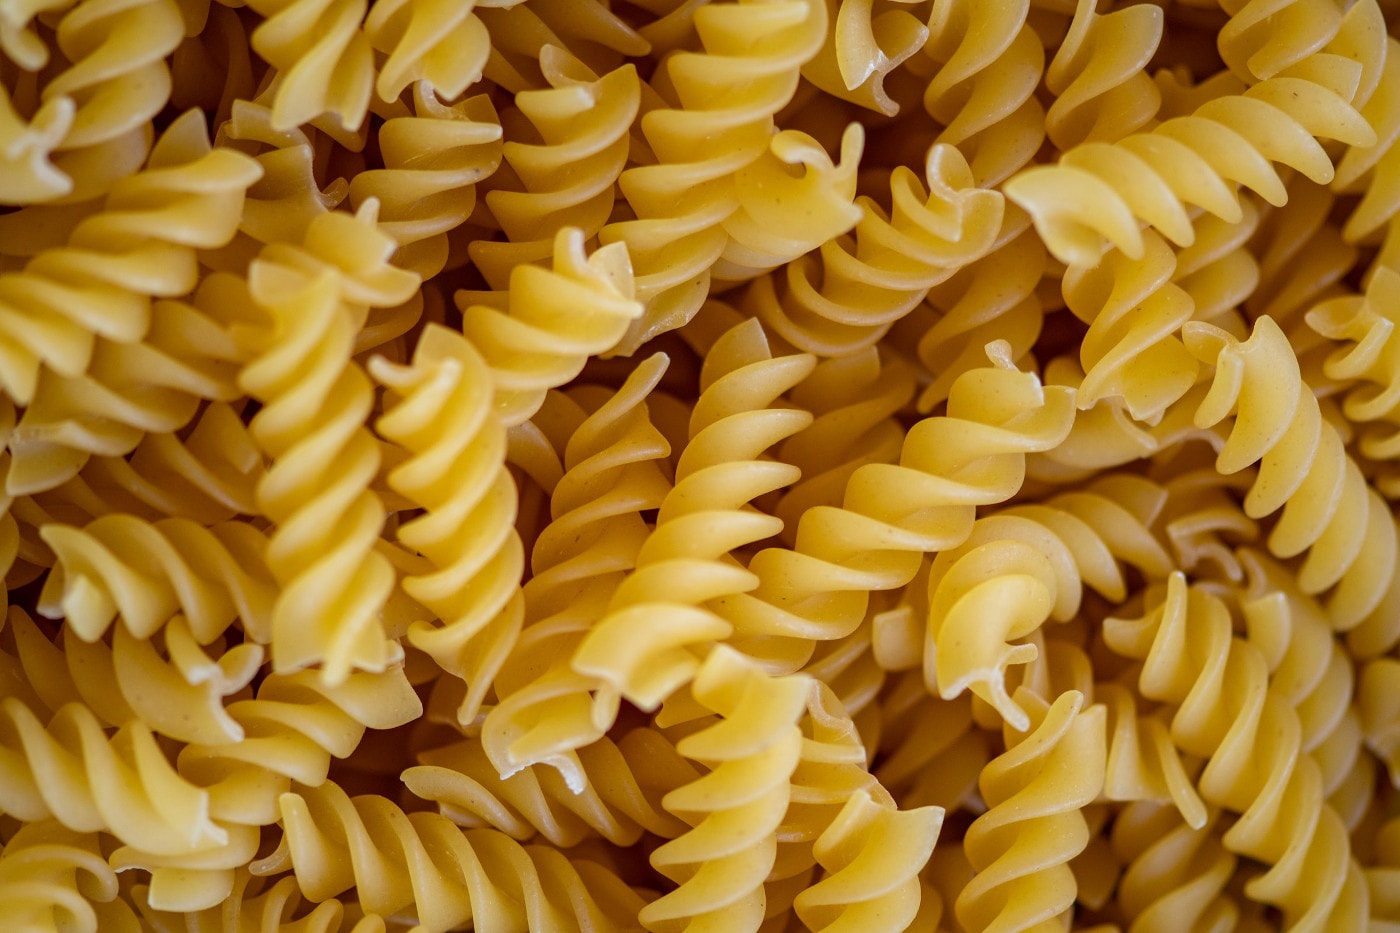 Marginal pasta gains